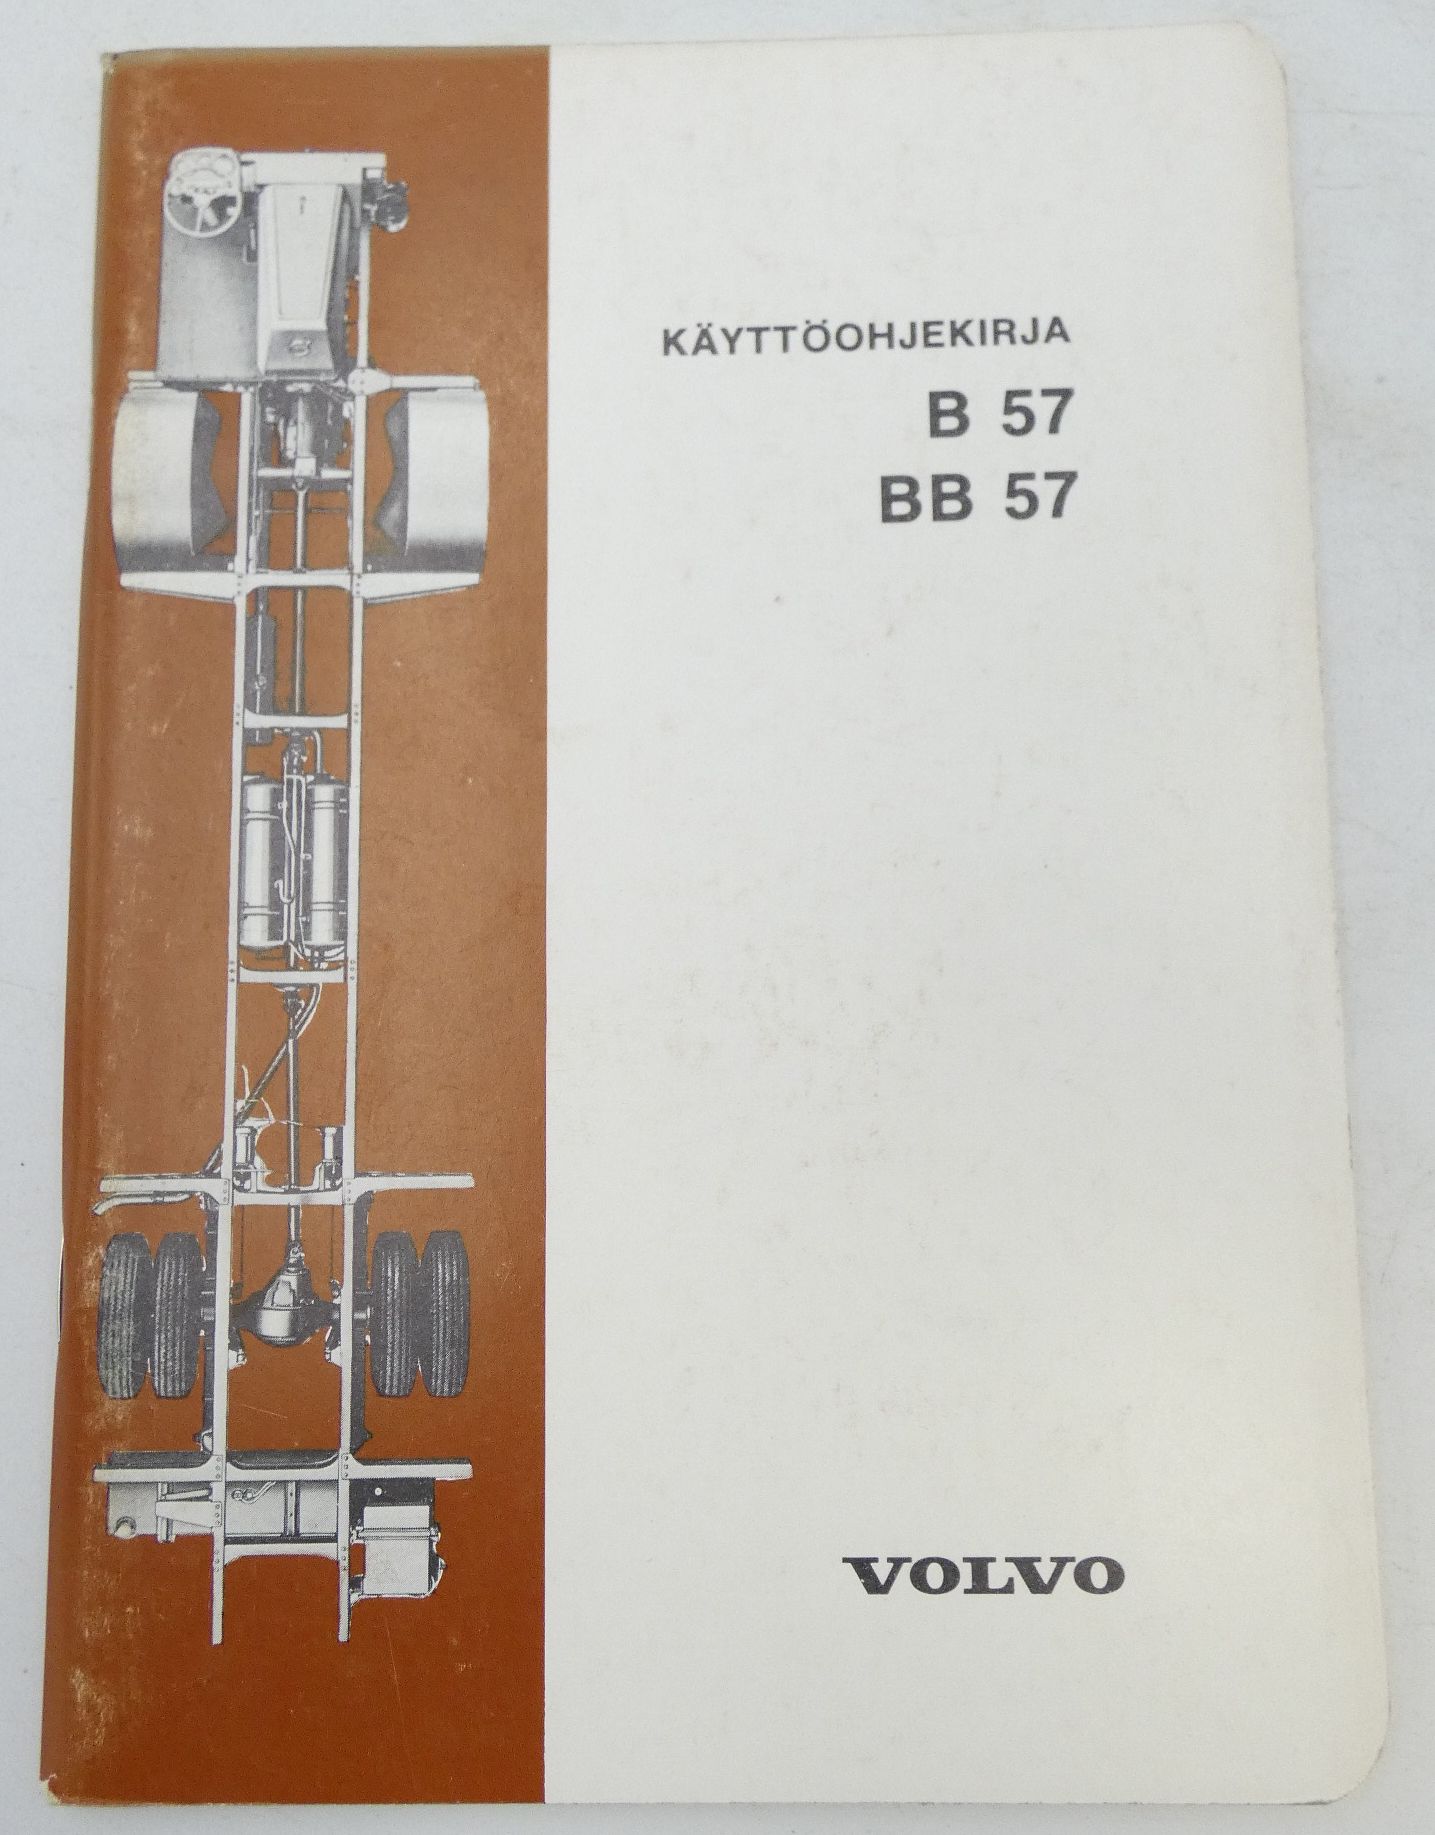 Volvo B57, BB57 käyttöohjekirja